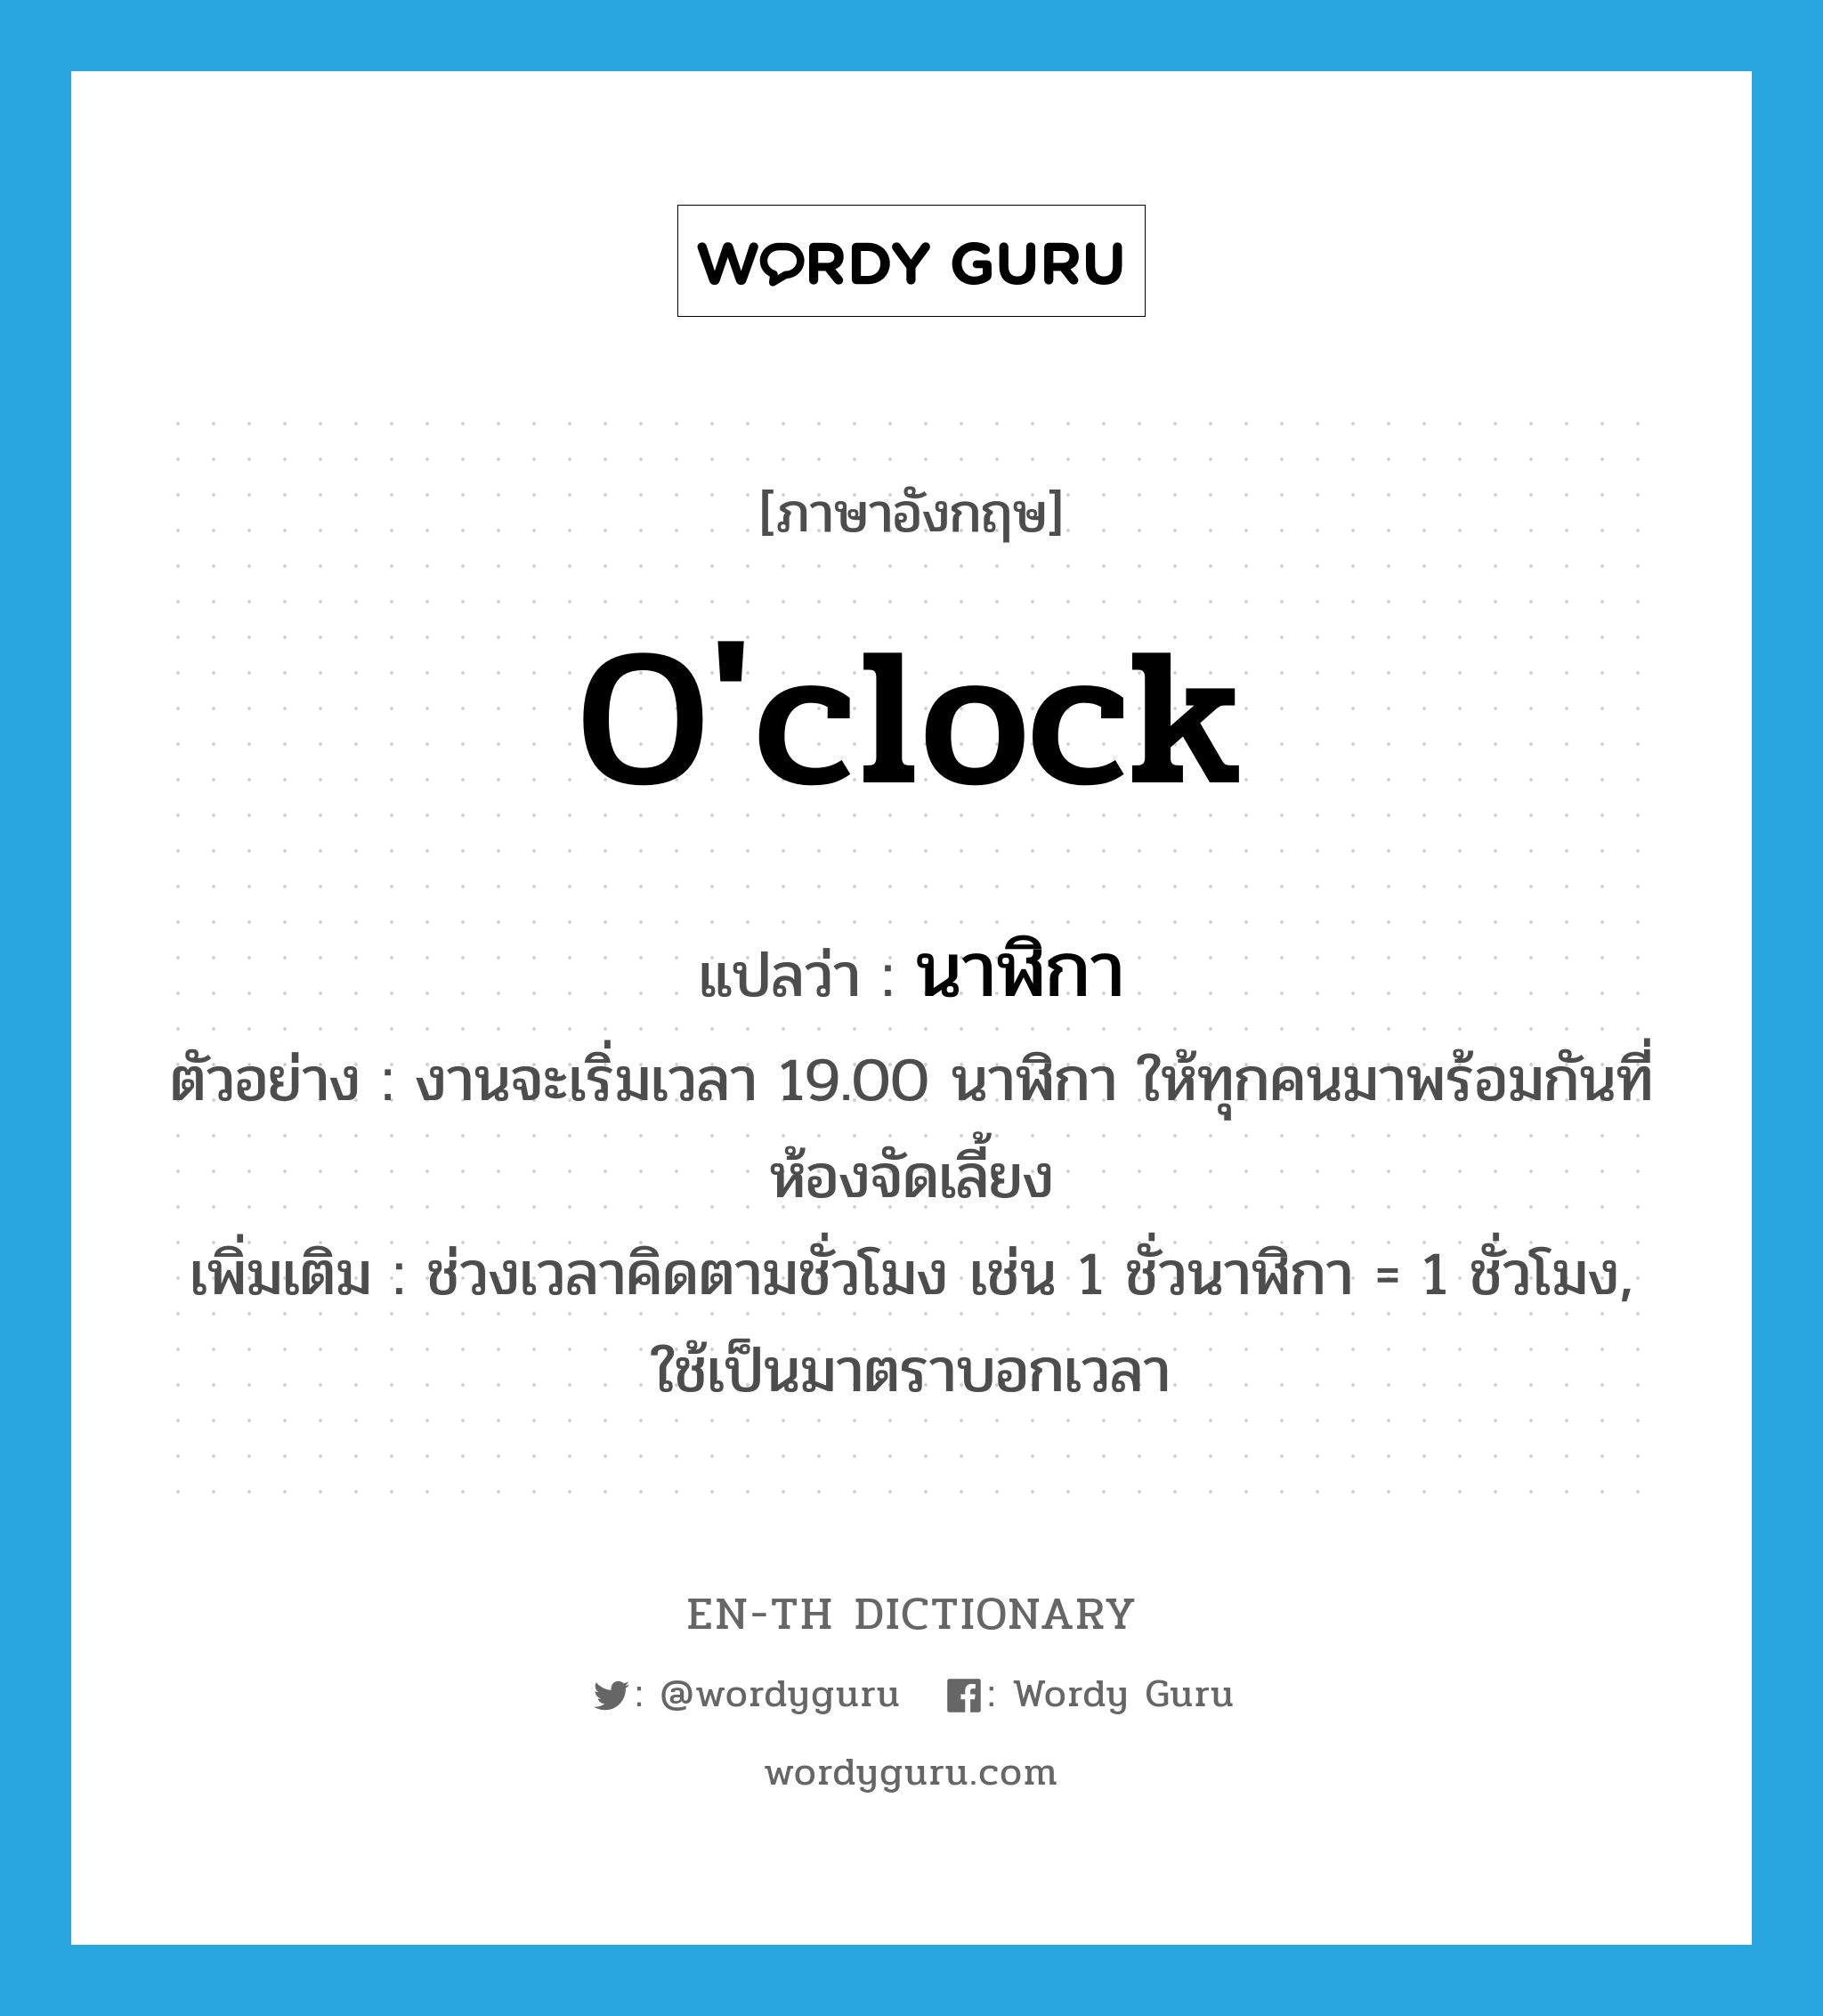 นาฬิกา ภาษาอังกฤษ?, คำศัพท์ภาษาอังกฤษ นาฬิกา แปลว่า o'clock ประเภท CLAS ตัวอย่าง งานจะเริ่มเวลา 19.00 นาฬิกา ให้ทุกคนมาพร้อมกันที่ห้องจัดเลี้ยง เพิ่มเติม ช่วงเวลาคิดตามชั่วโมง เช่น 1 ชั่วนาฬิกา = 1 ชั่วโมง, ใช้เป็นมาตราบอกเวลา หมวด CLAS